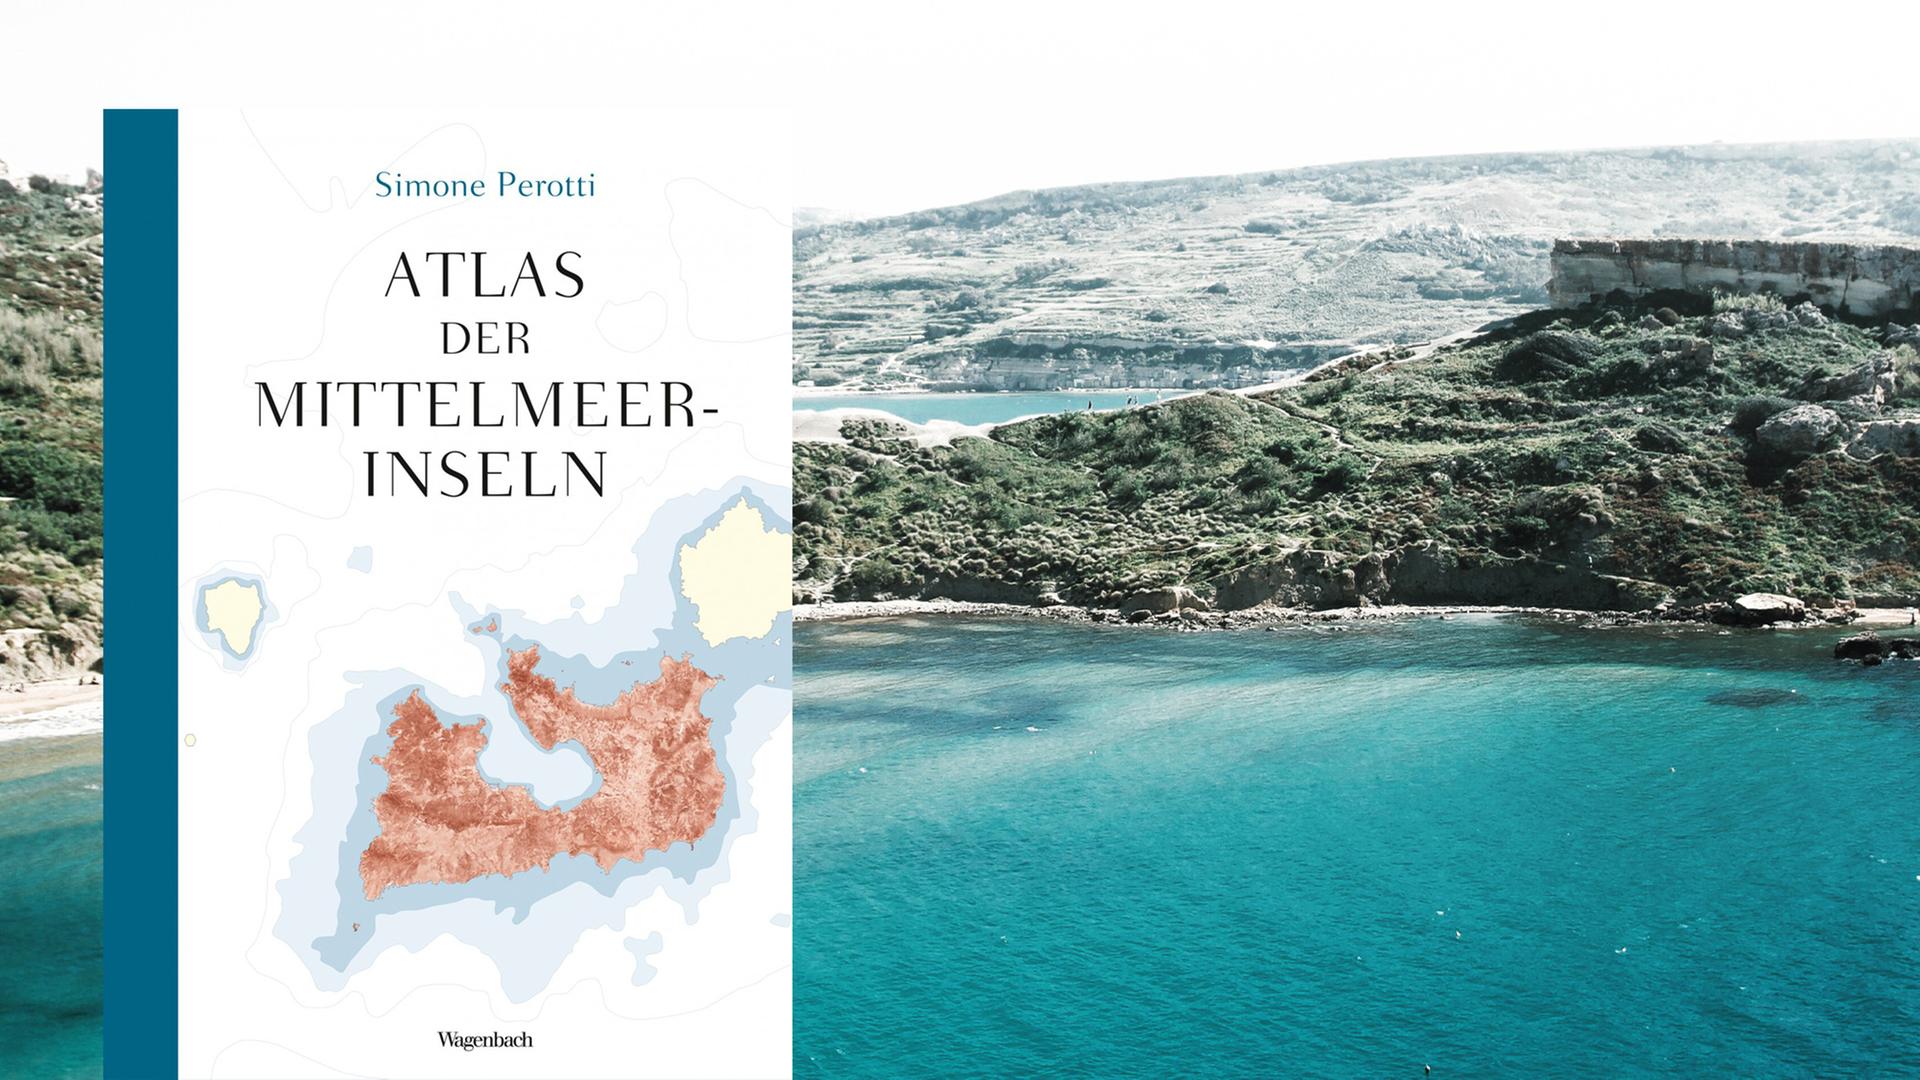 Cover von Simone Perottis Buch "Atlas der Mittelmeerinseln". Im Hintergrund ist die Küste von Malta zu sehen.